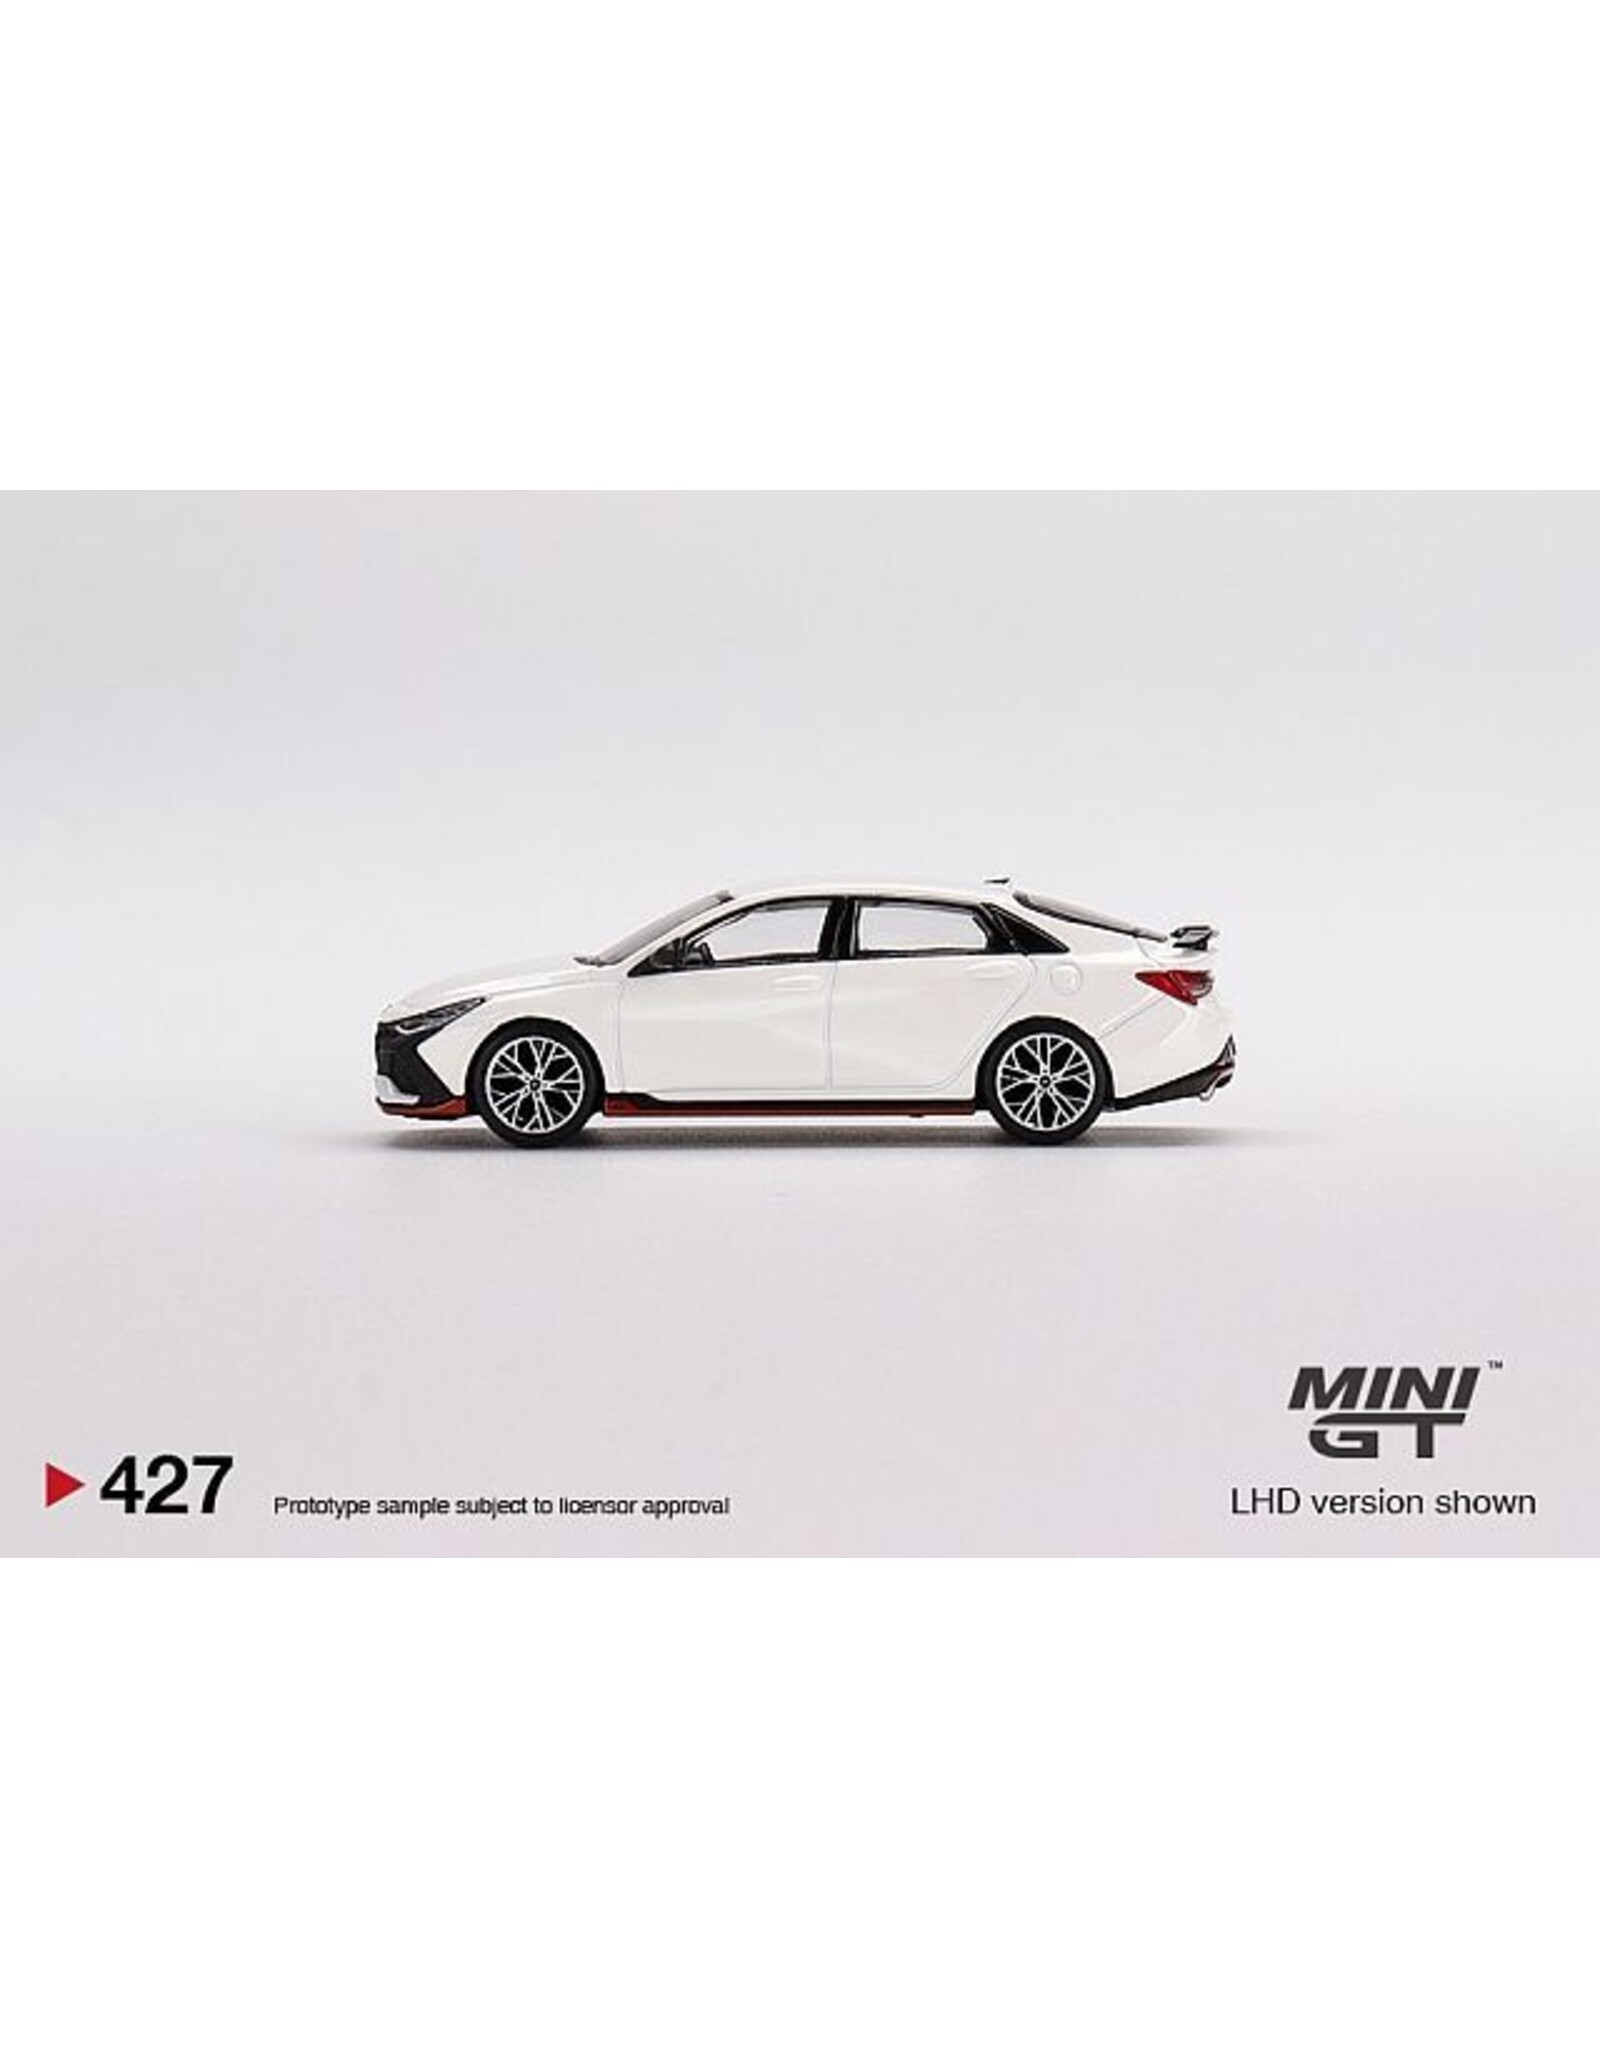 Hyundai Hyundai Elantra N(ceramic white)